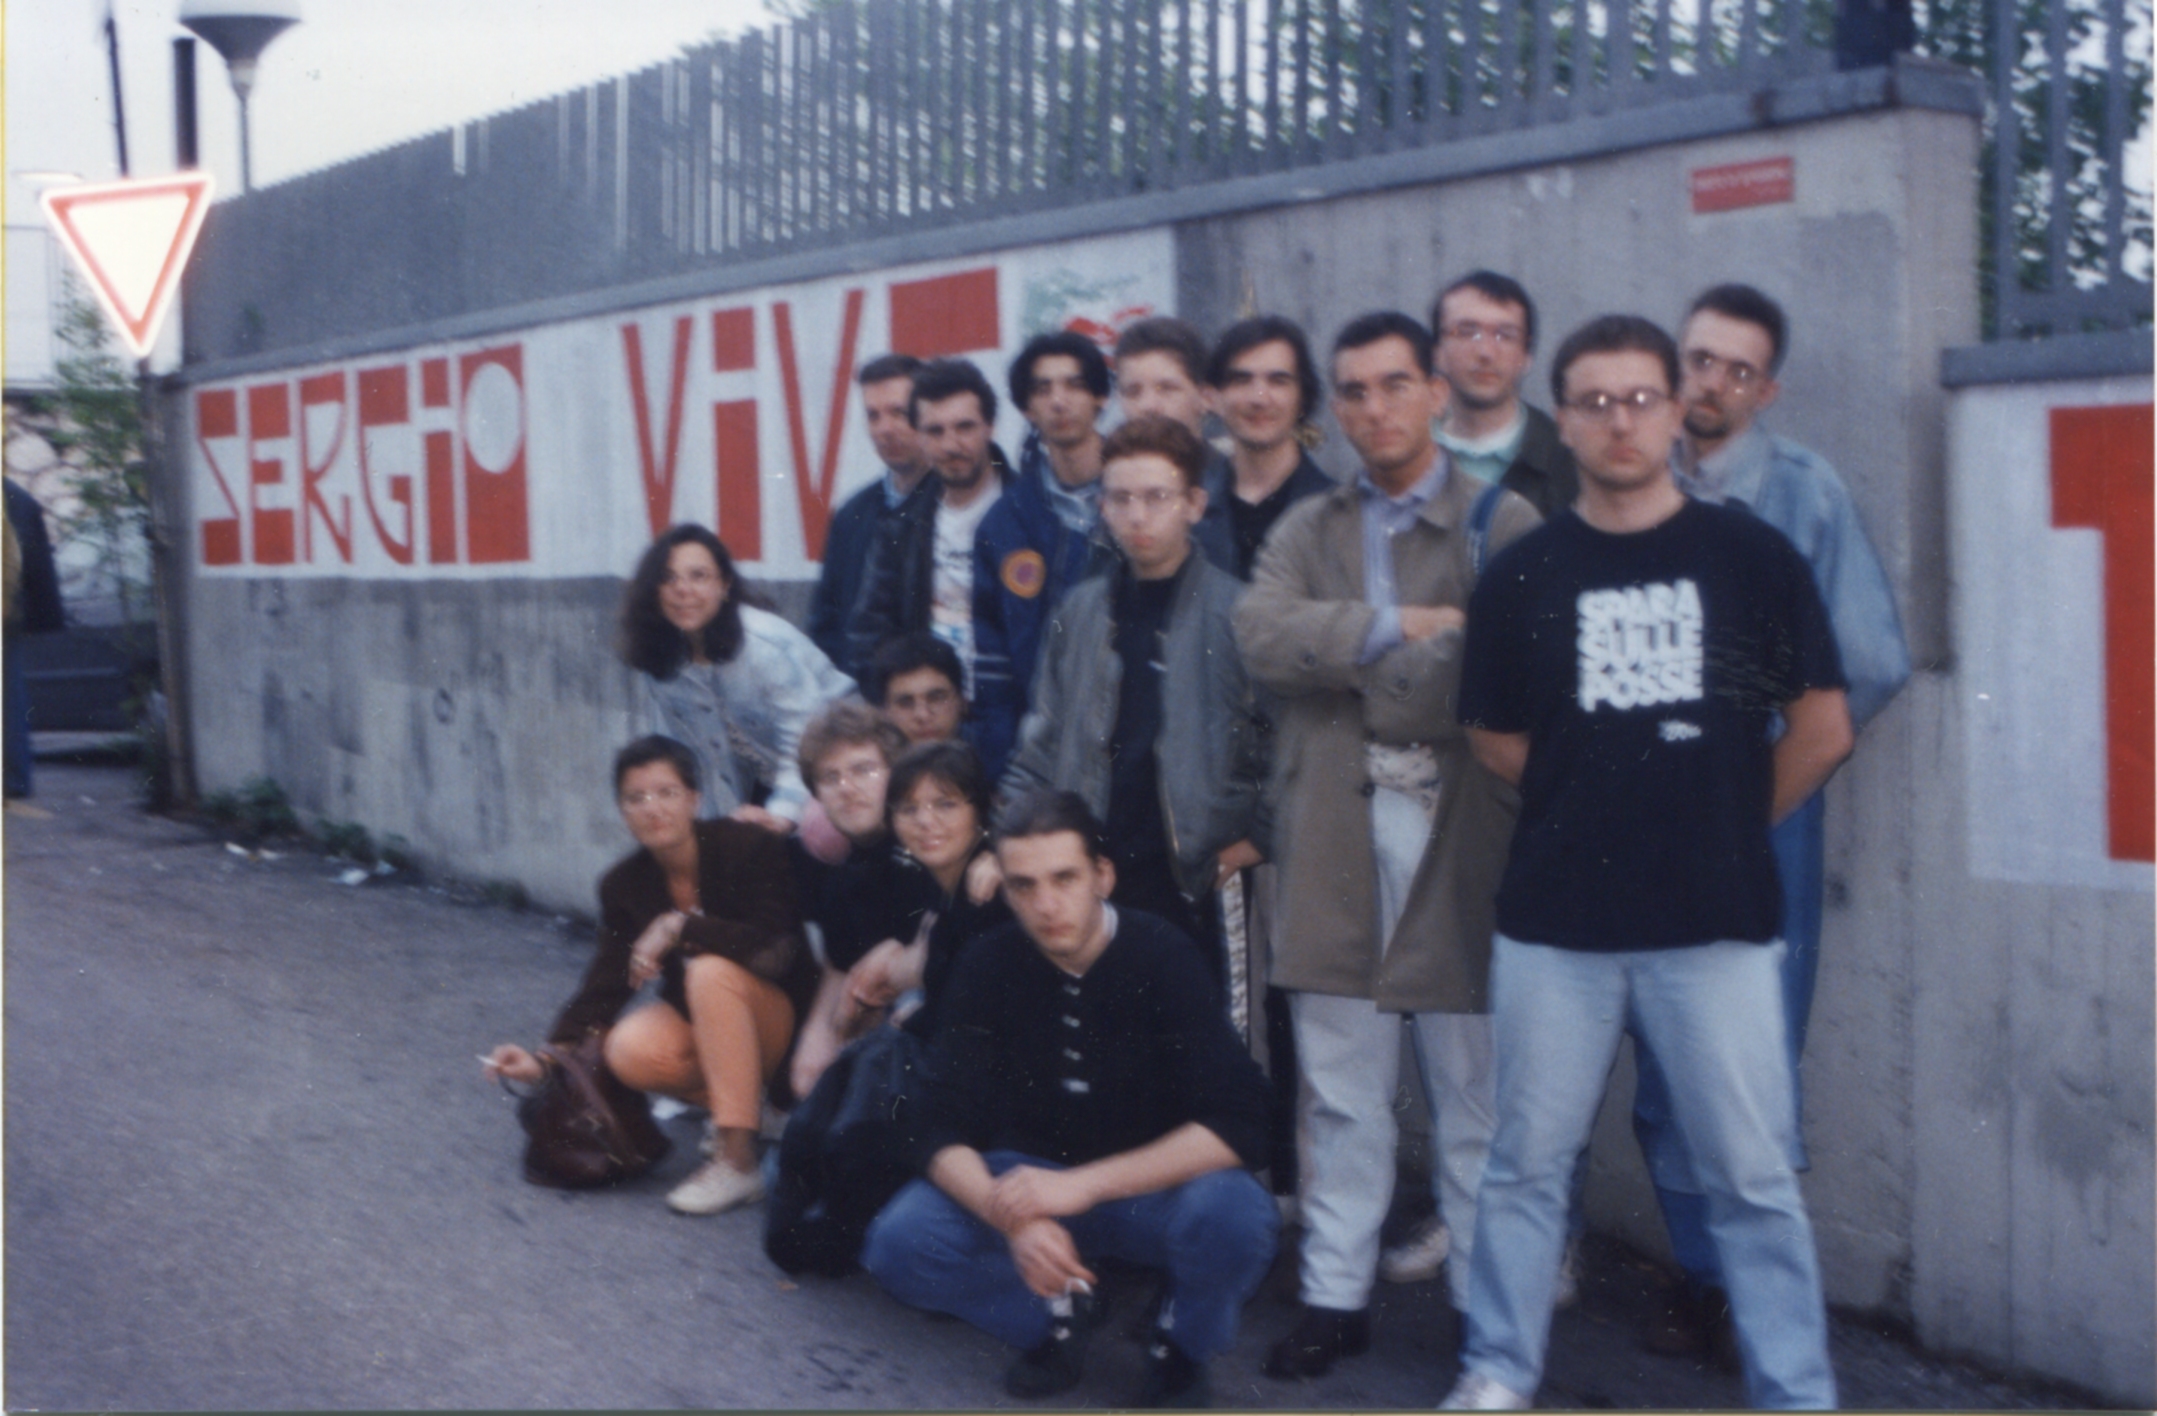 Militanti del Fronde della Gioventù di Torino vicino al murales "Sergio Vive" in via Ramelli